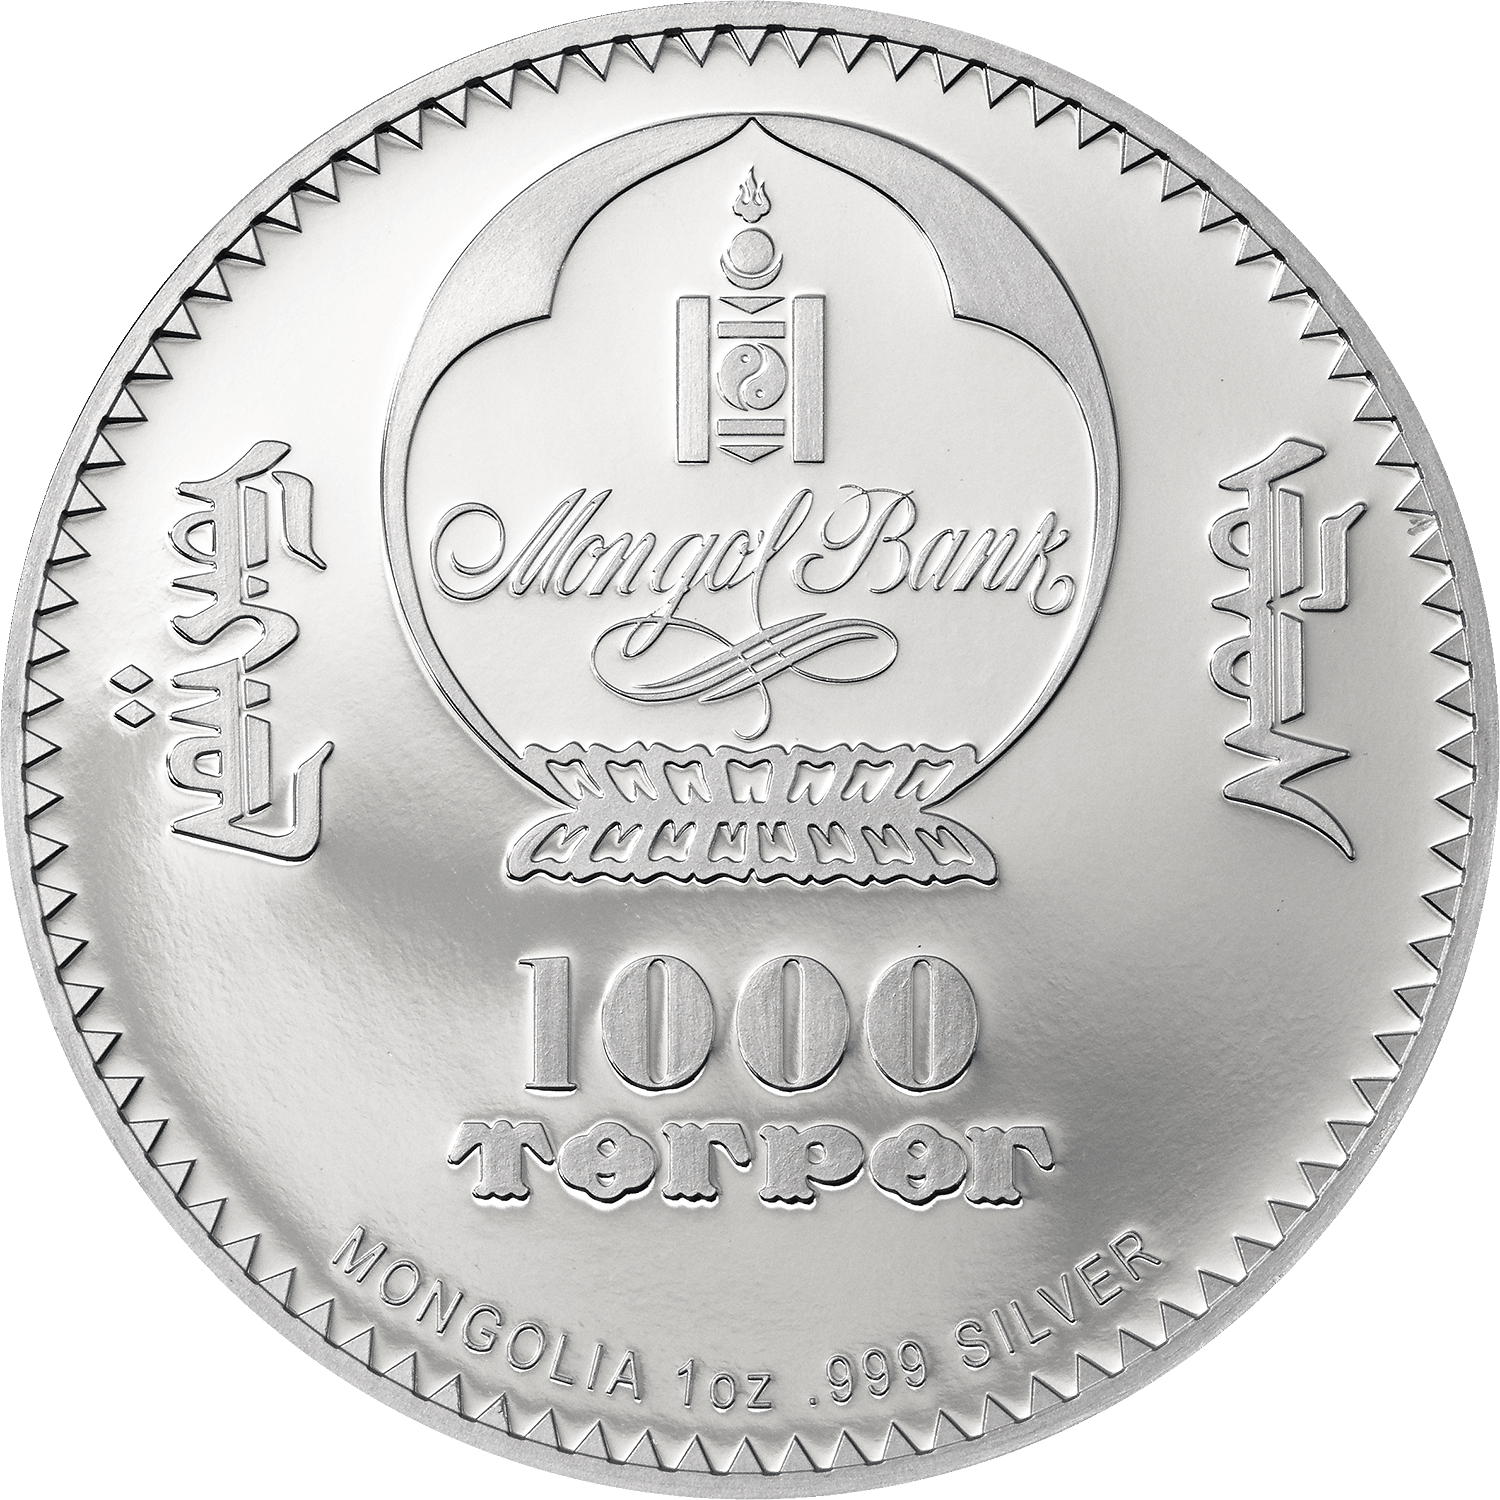 MOTHER TERESA 1 Oz Silver Coin 1000 Togrog Mongolia 2022 - PARTHAVA COIN